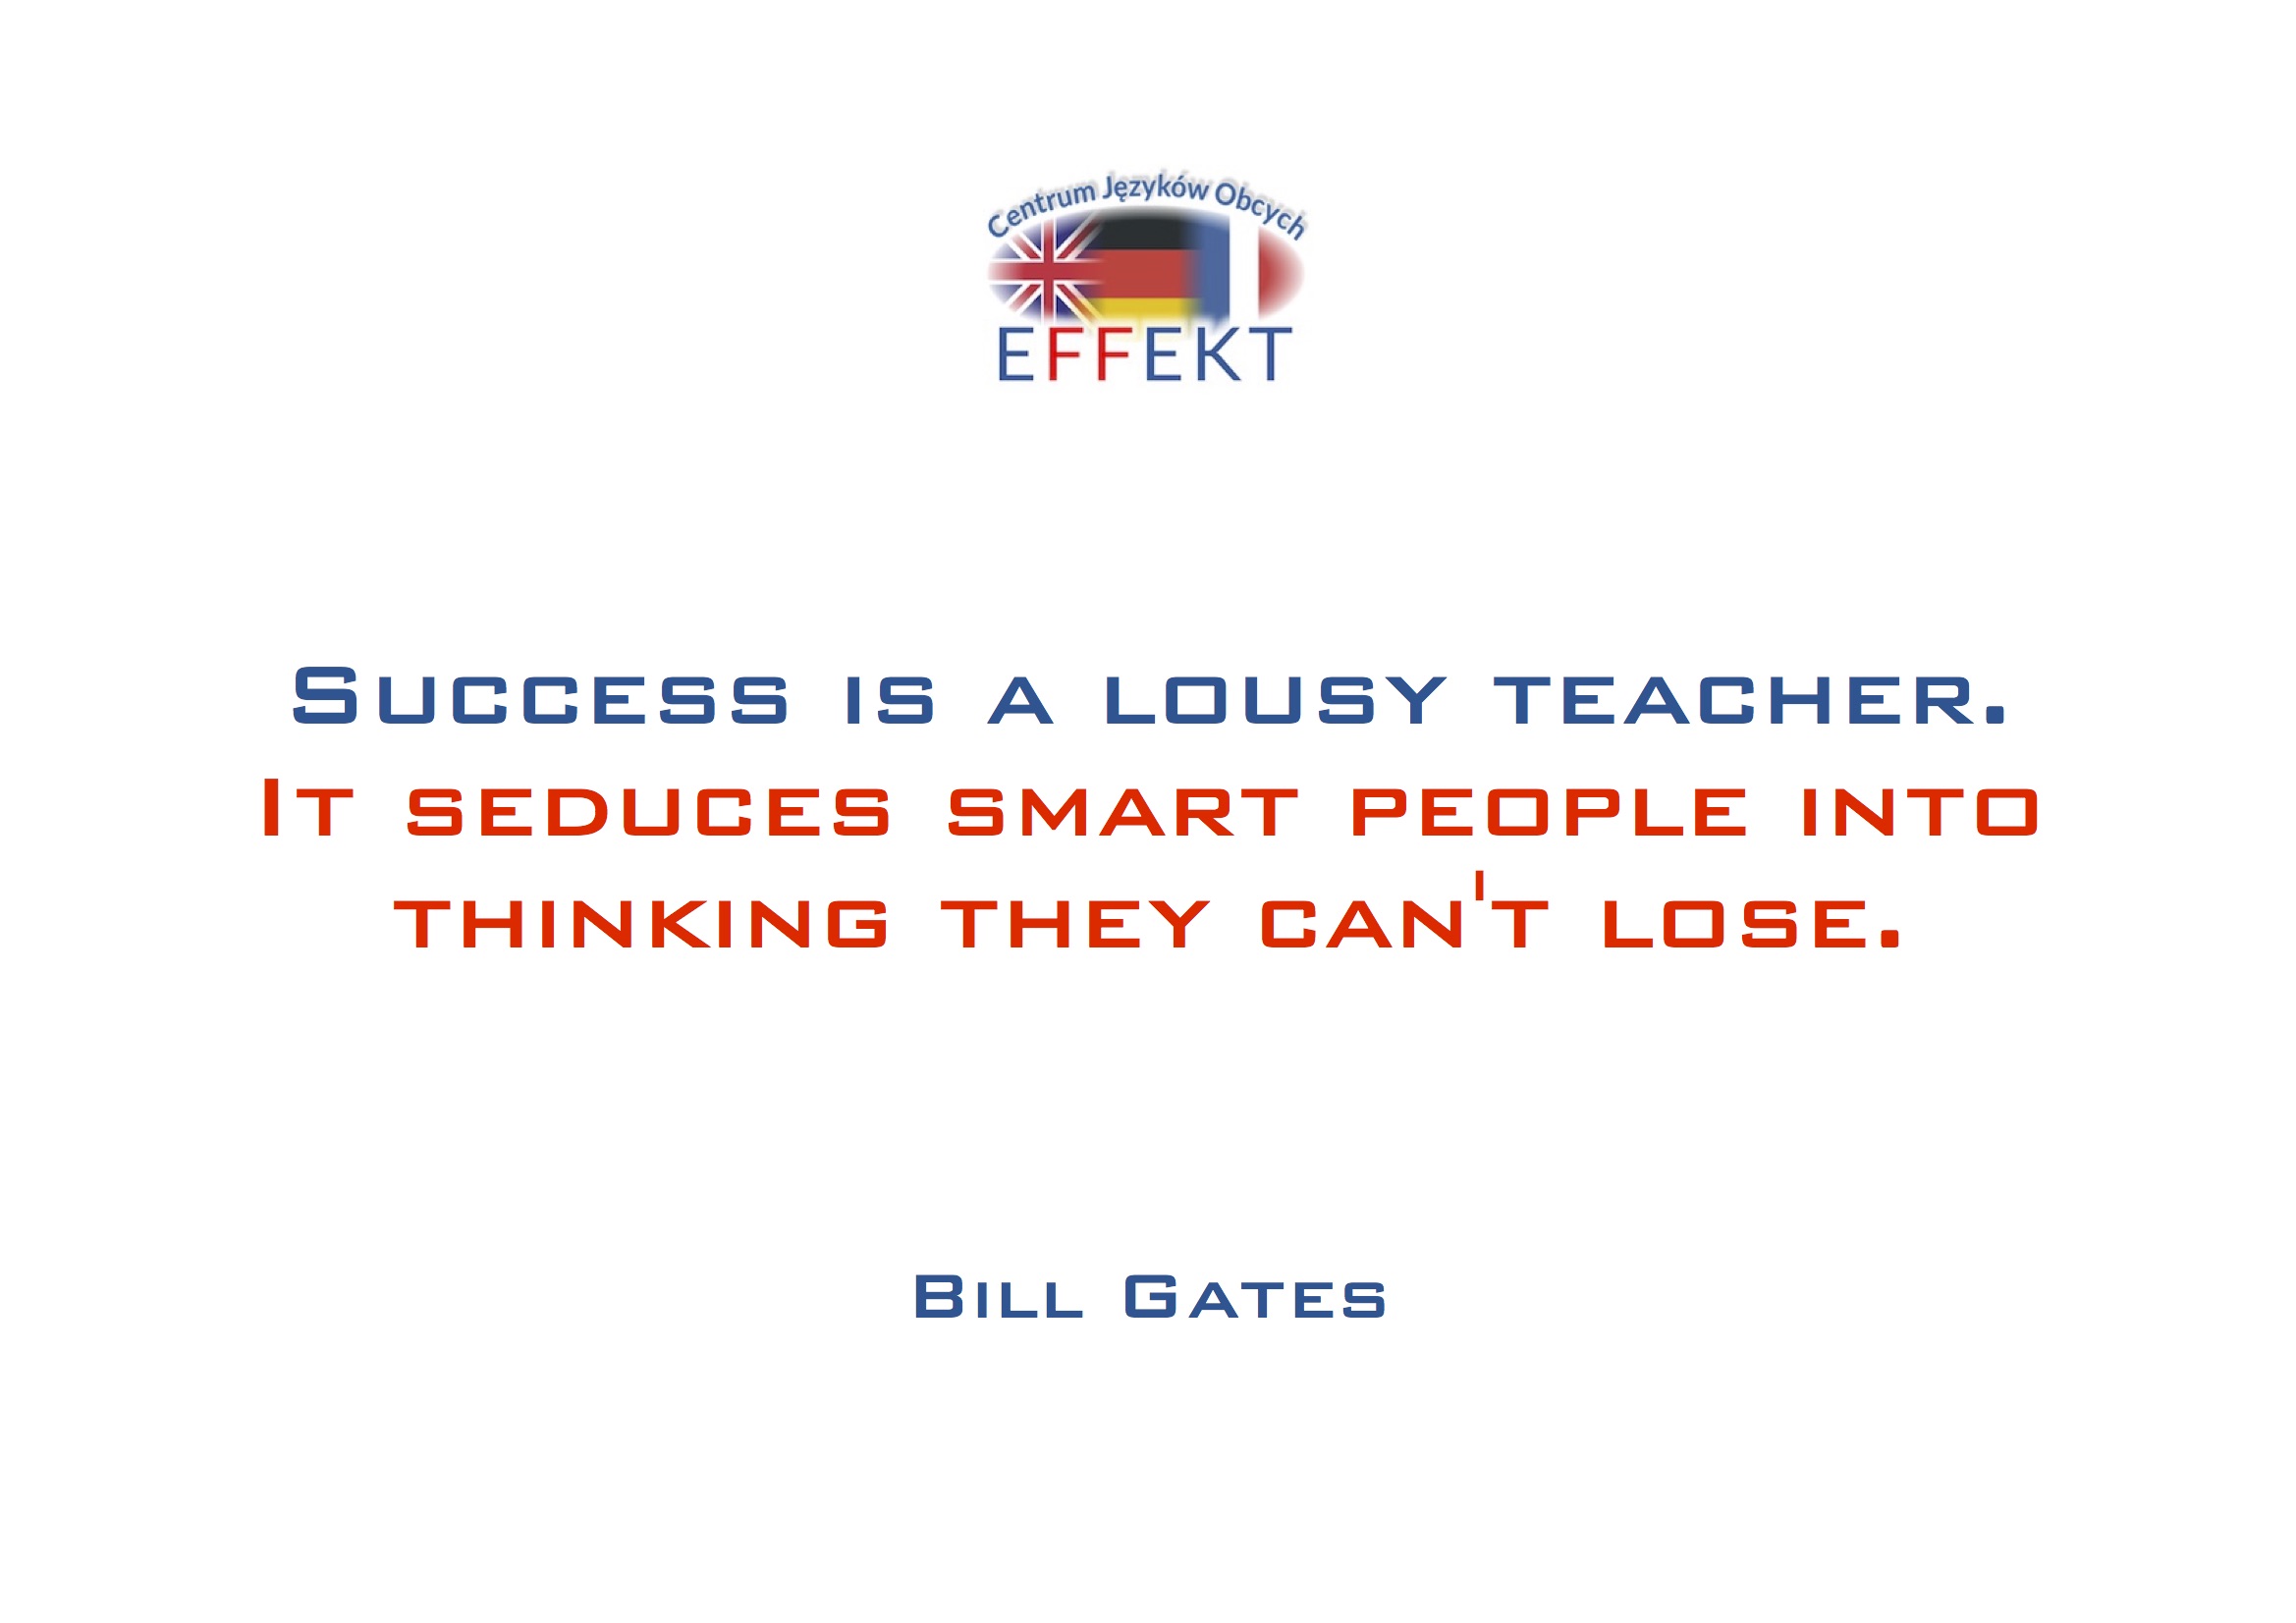 Success is a lousy teacher